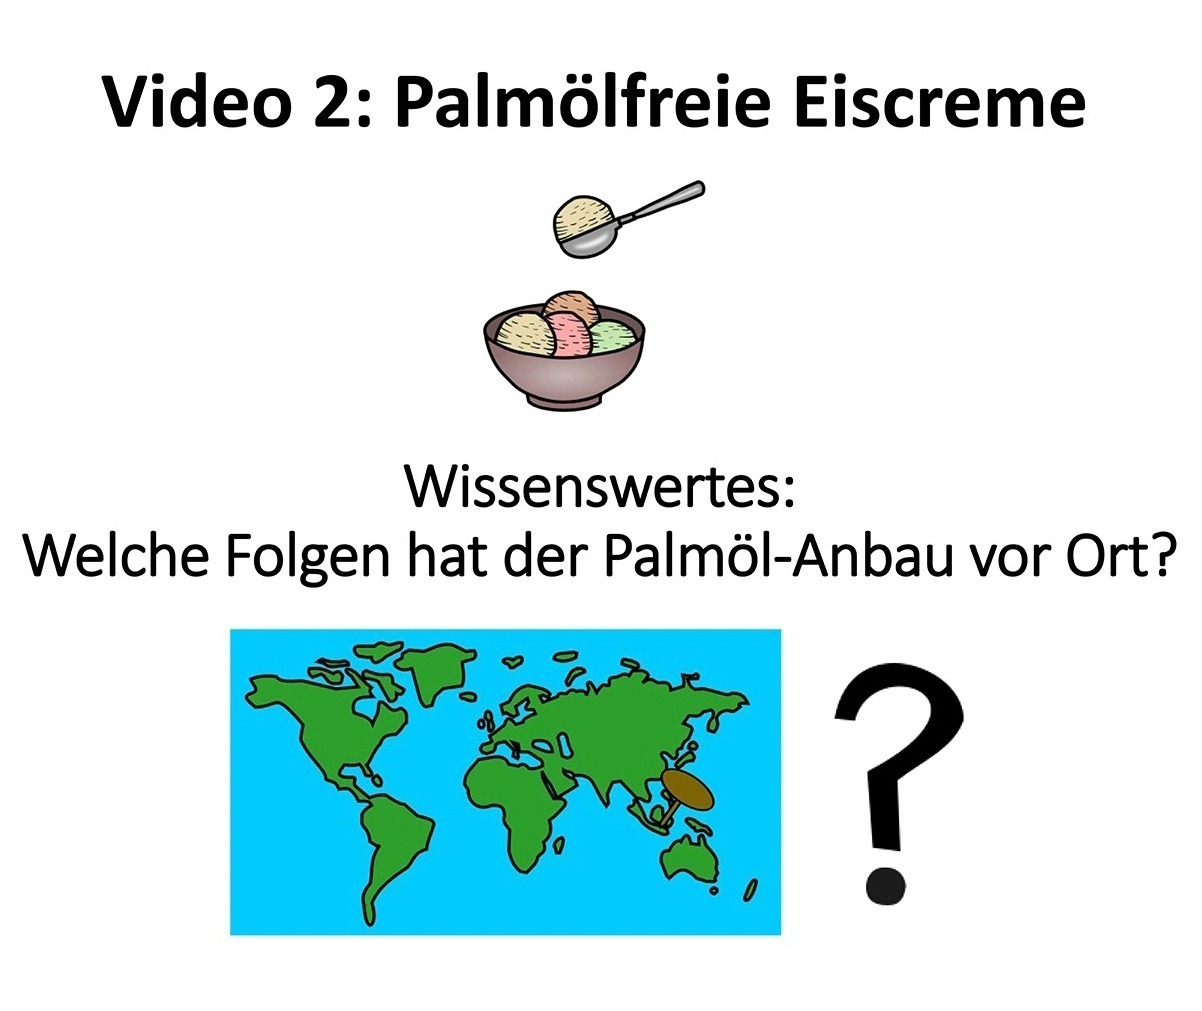 palmoelfrei video 2